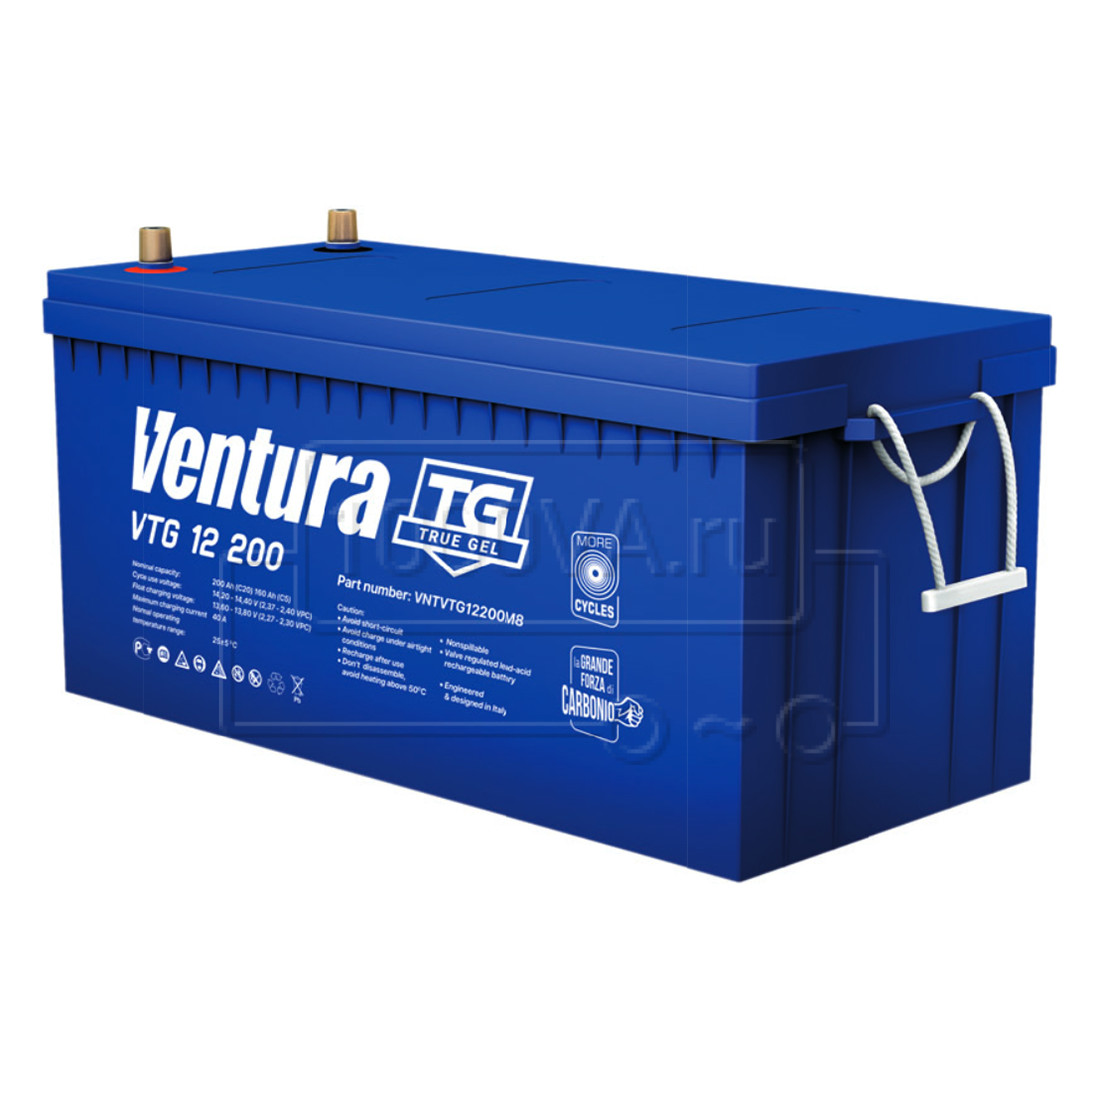 Ventura VTG 12 200 M8